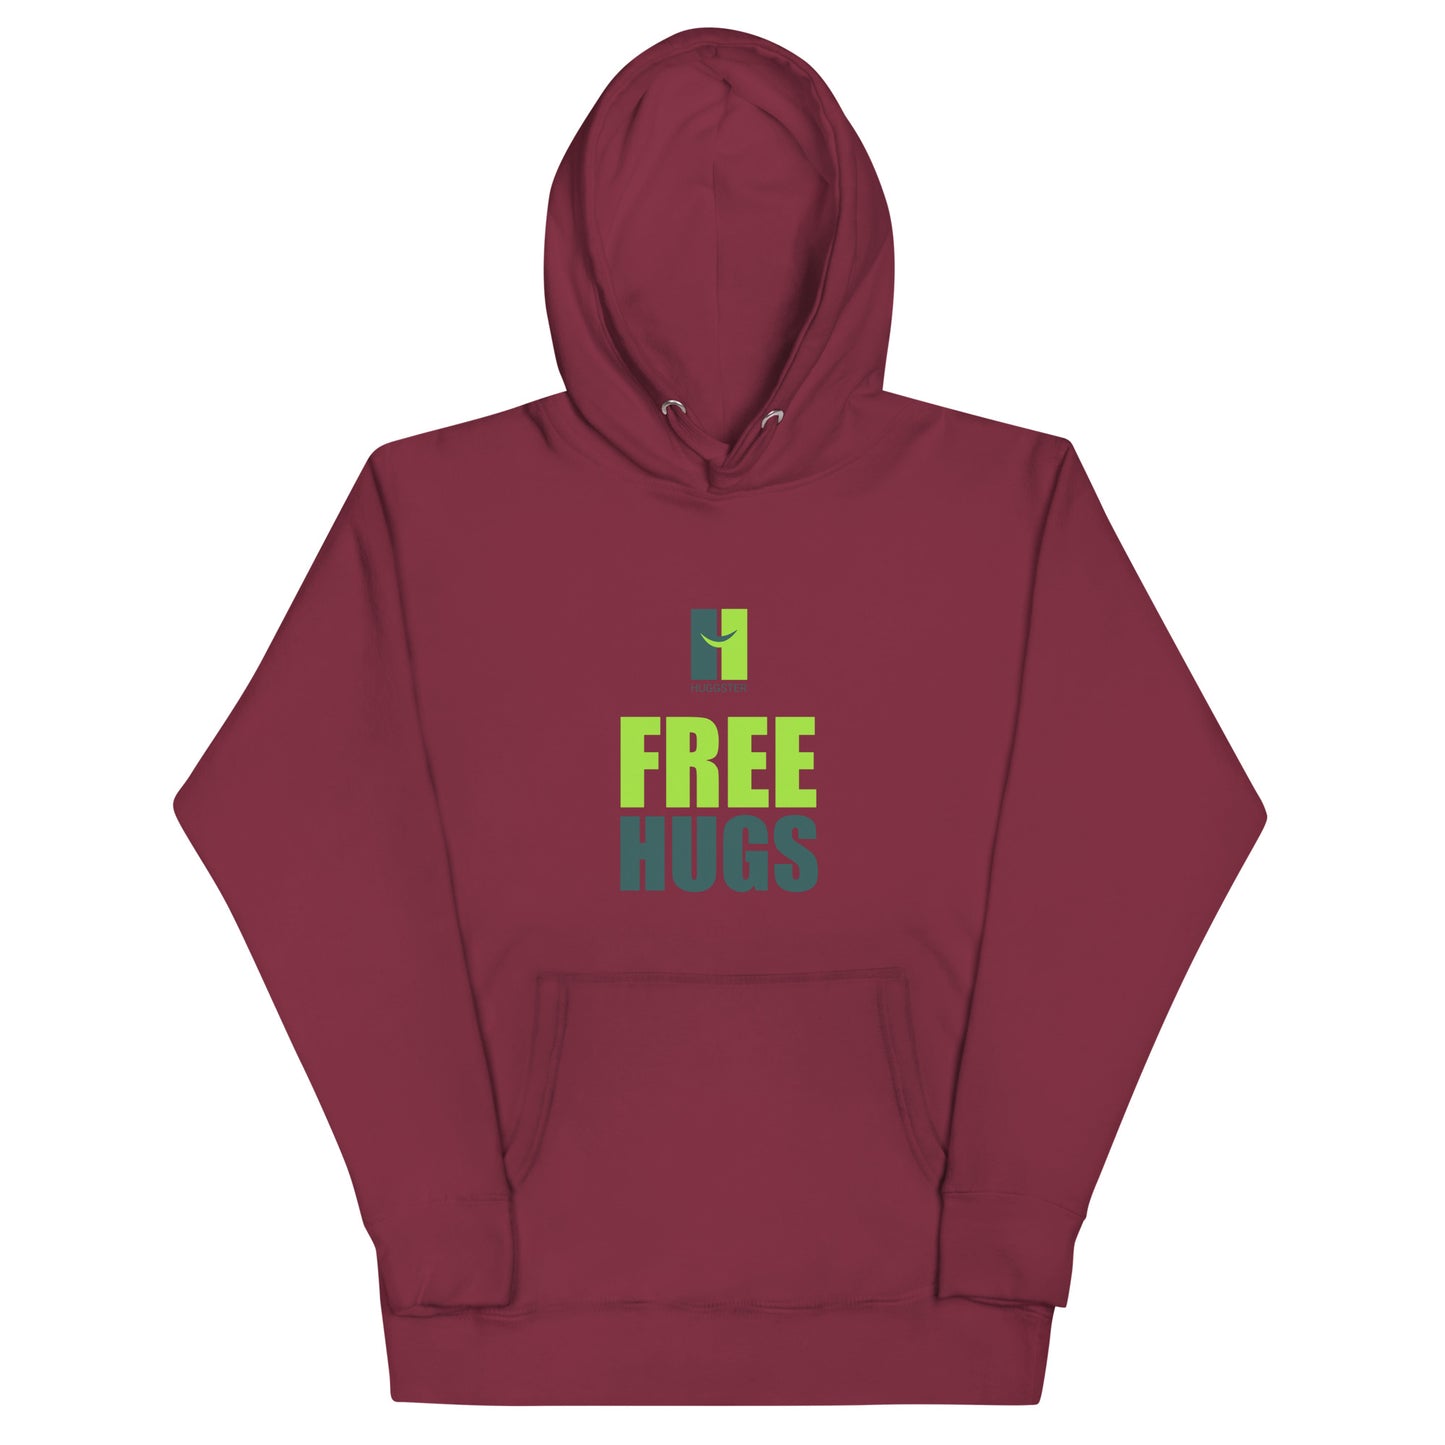 Unisex Premium Kapuzenpullover "Free Hugs"